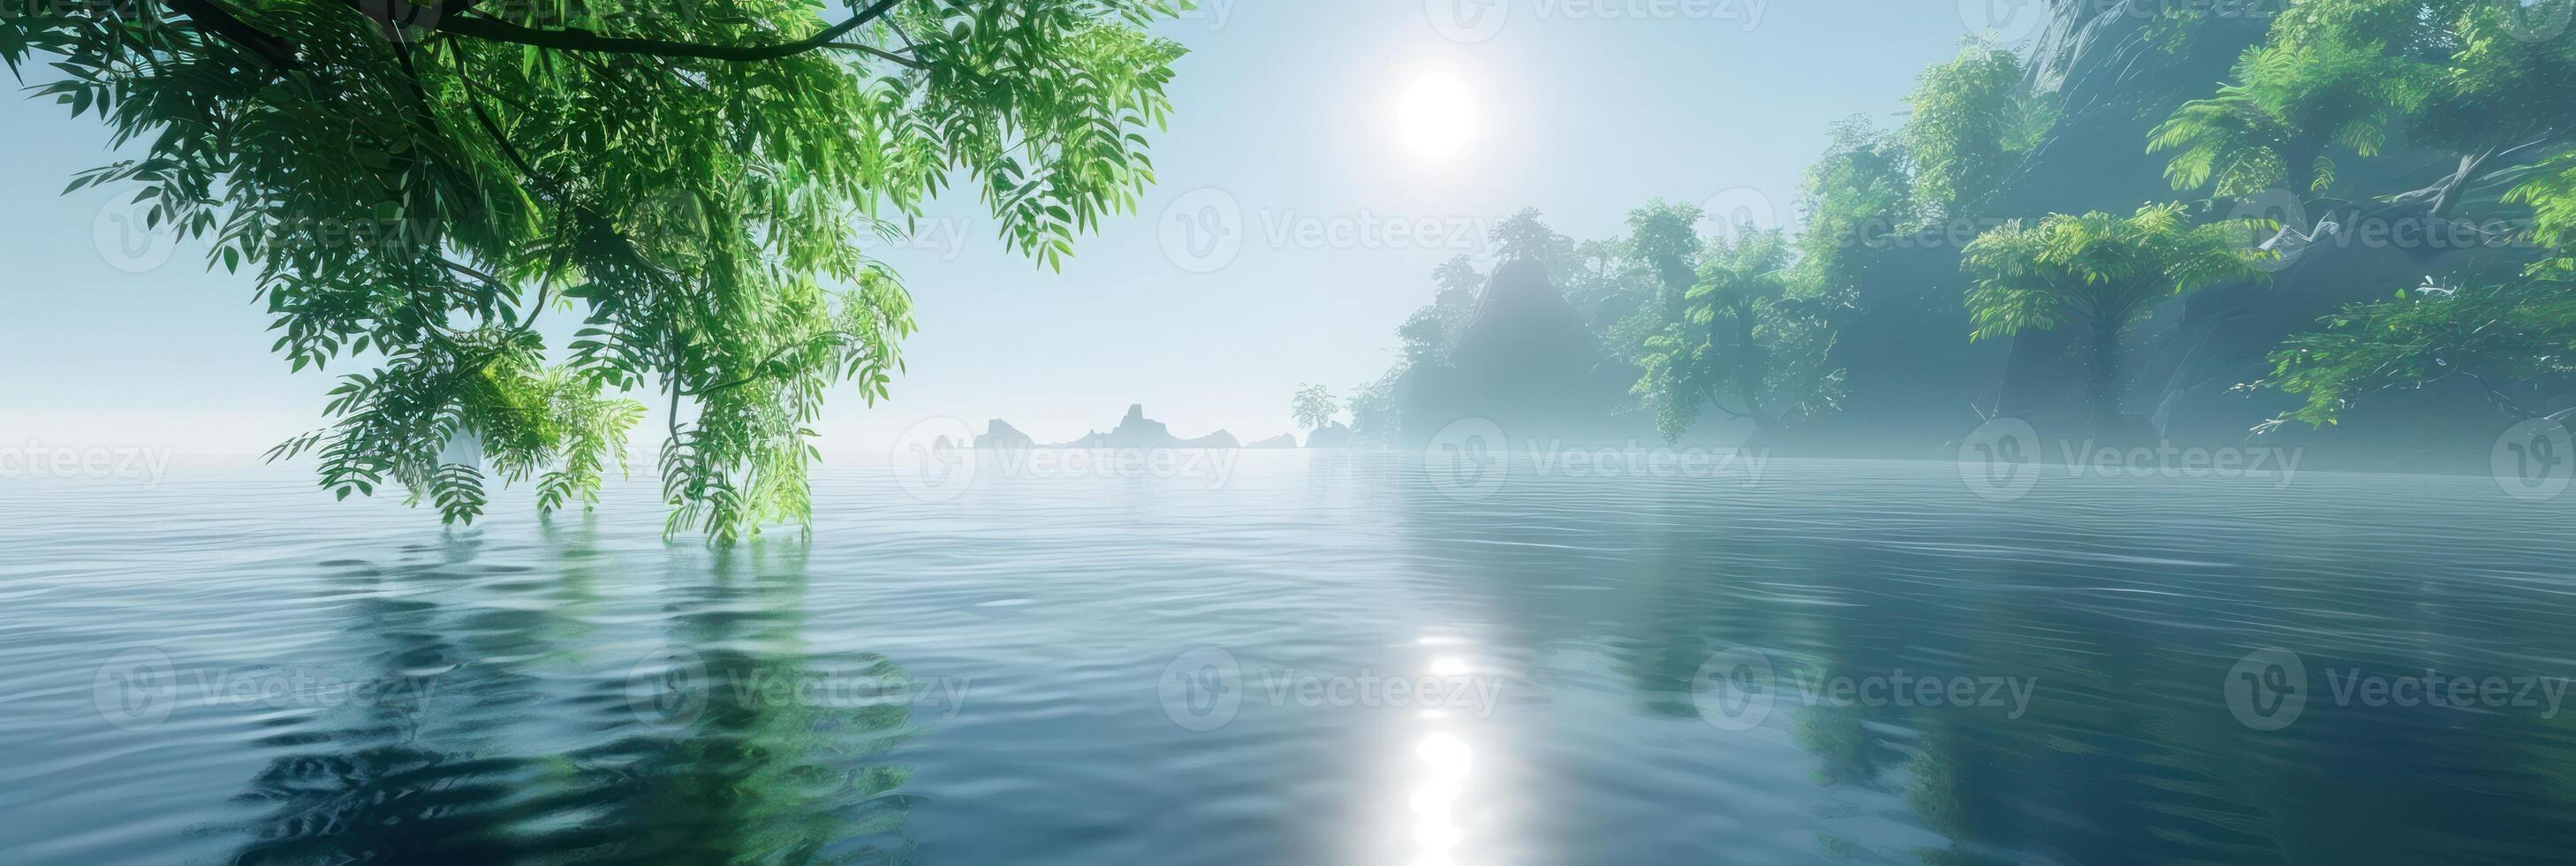 un pintura demostración un lago anidado entre un denso bosque de alto arboles foto